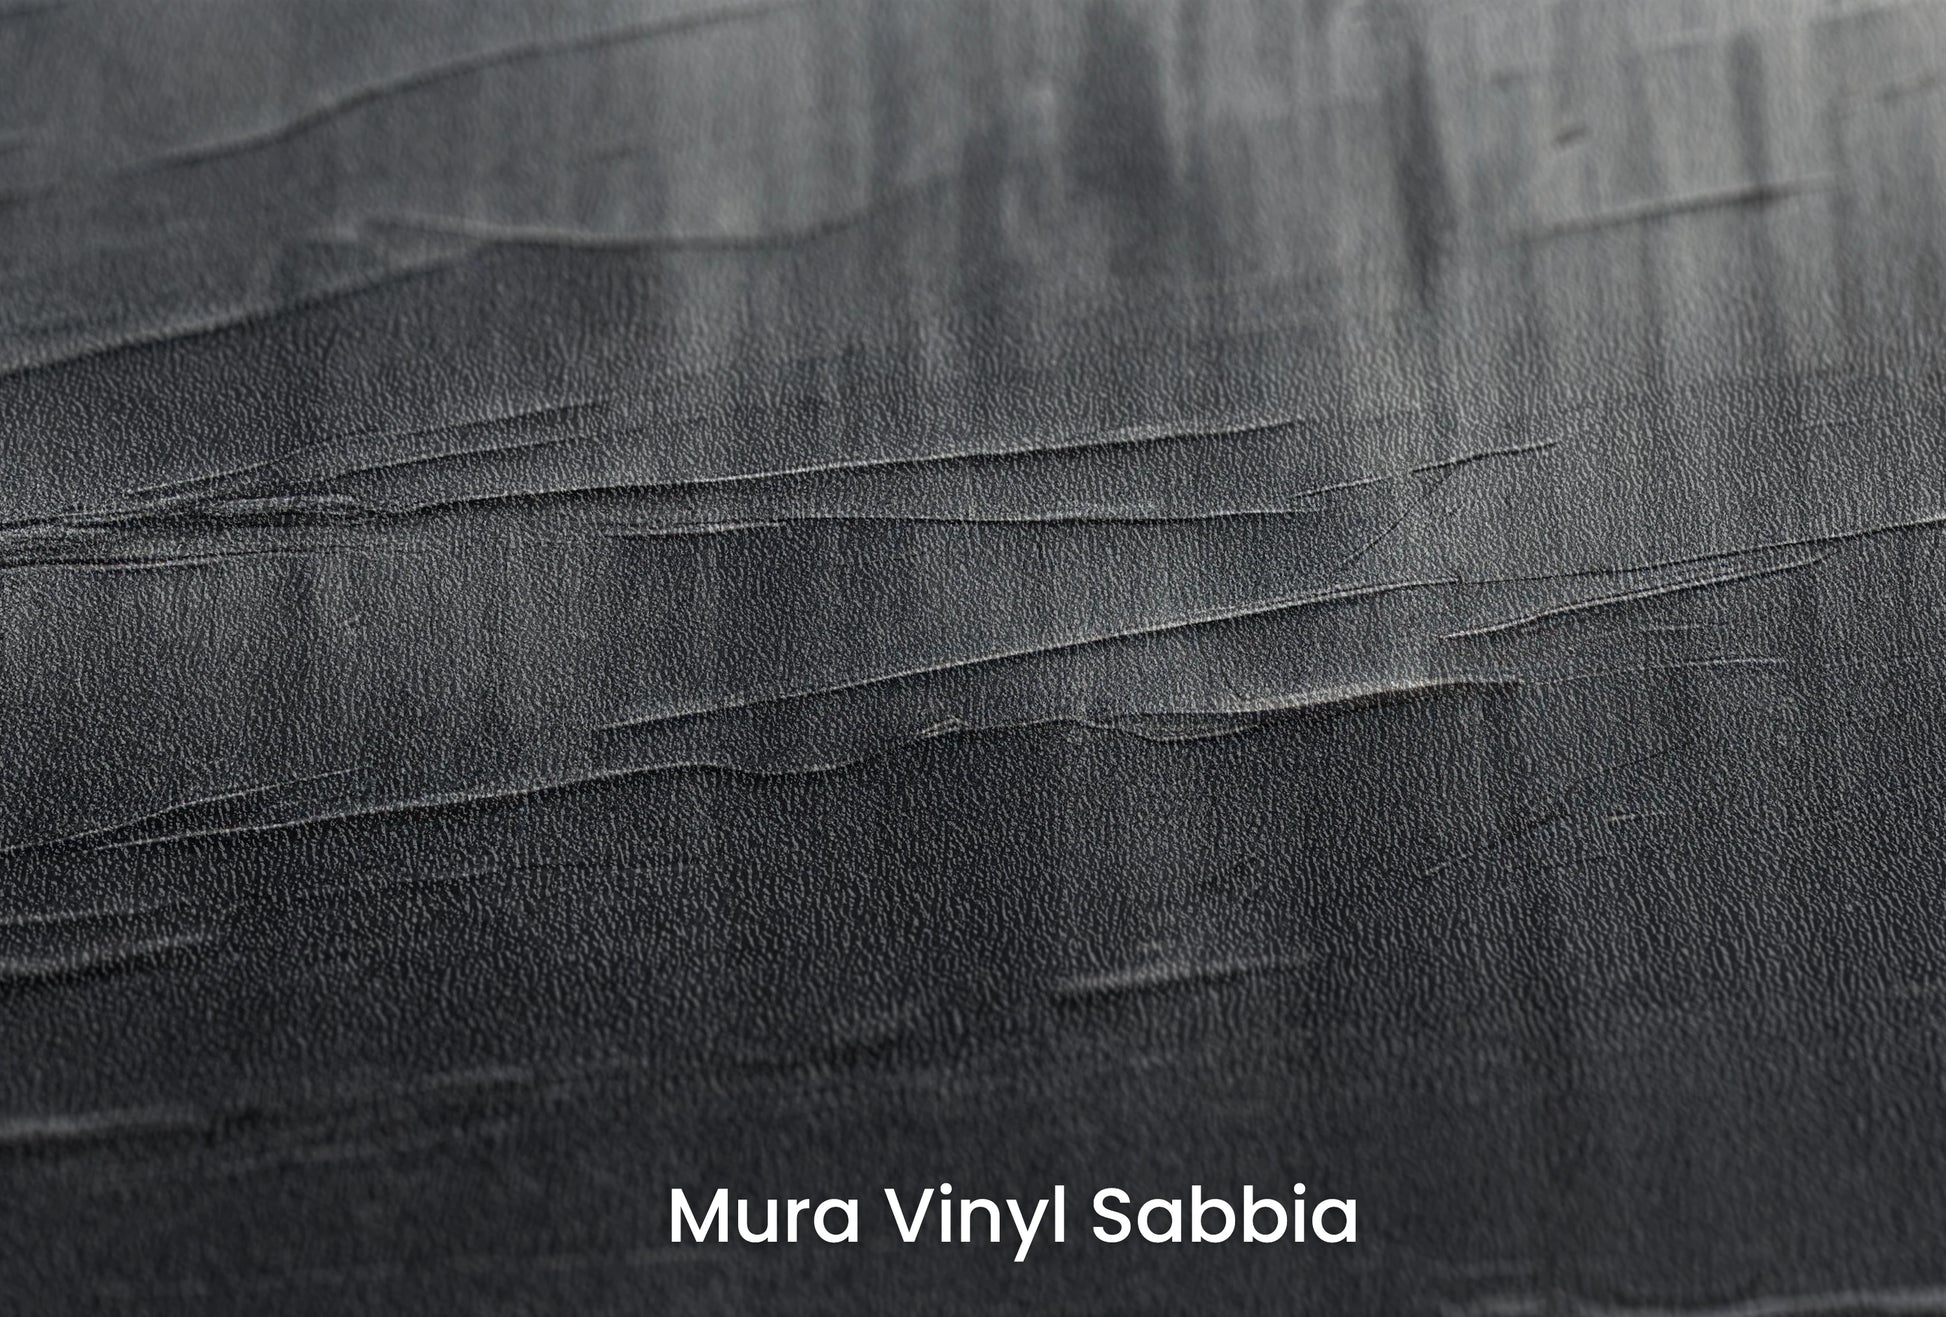 Zbliżenie na artystyczną fototapetę o nazwie Silver Strokes na podłożu Mura Vinyl Sabbia struktura grubego ziarna piasku.